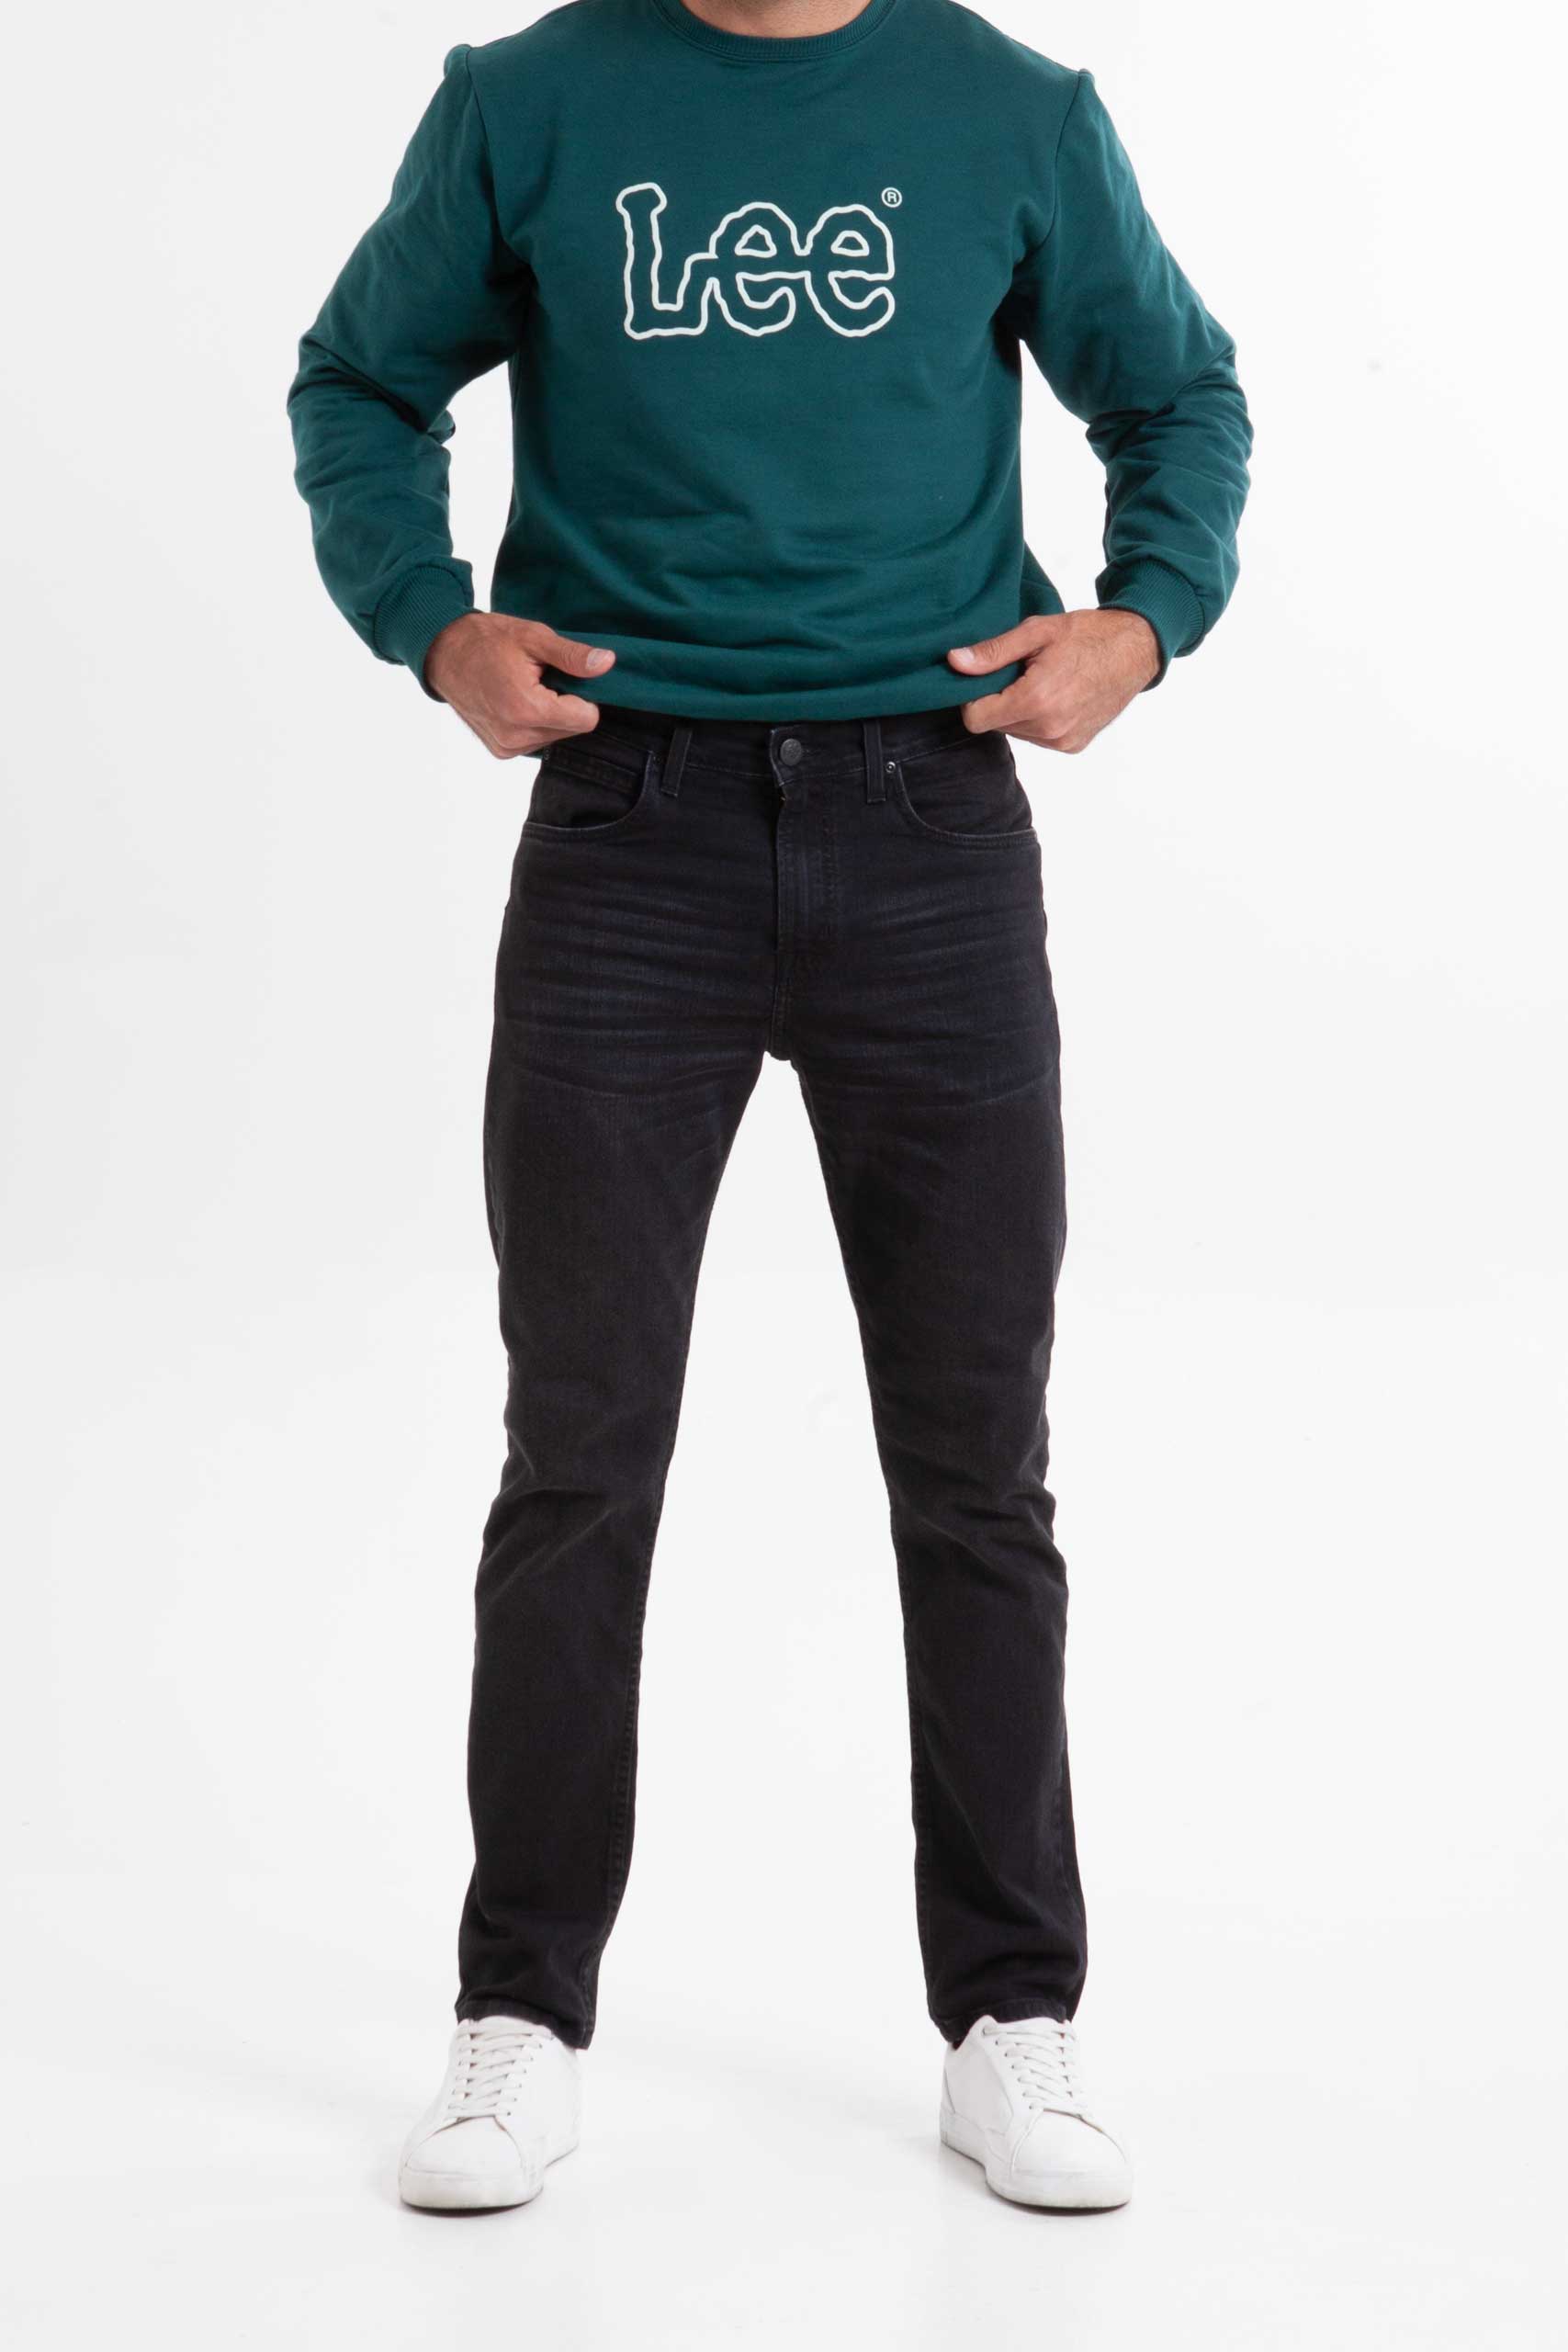 Vista frontal Jean de color verde de marca lee